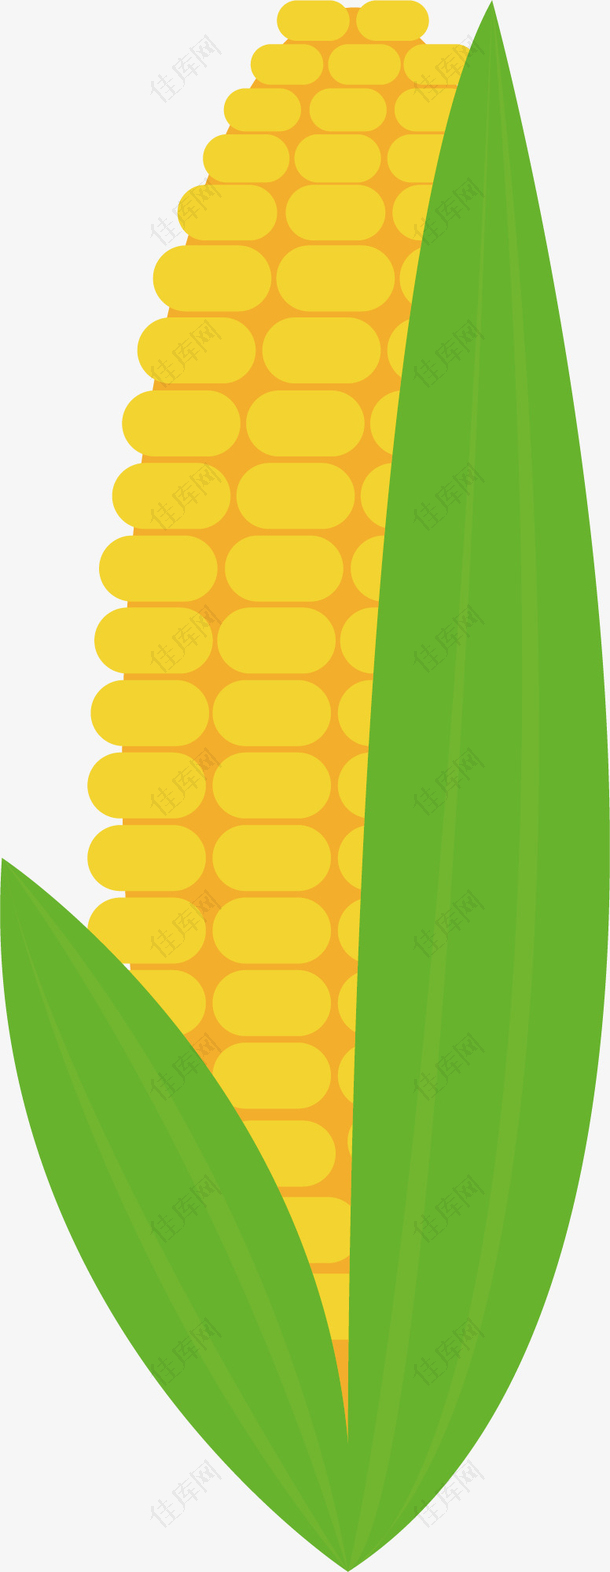 矢量PPT创意设计玉米图标